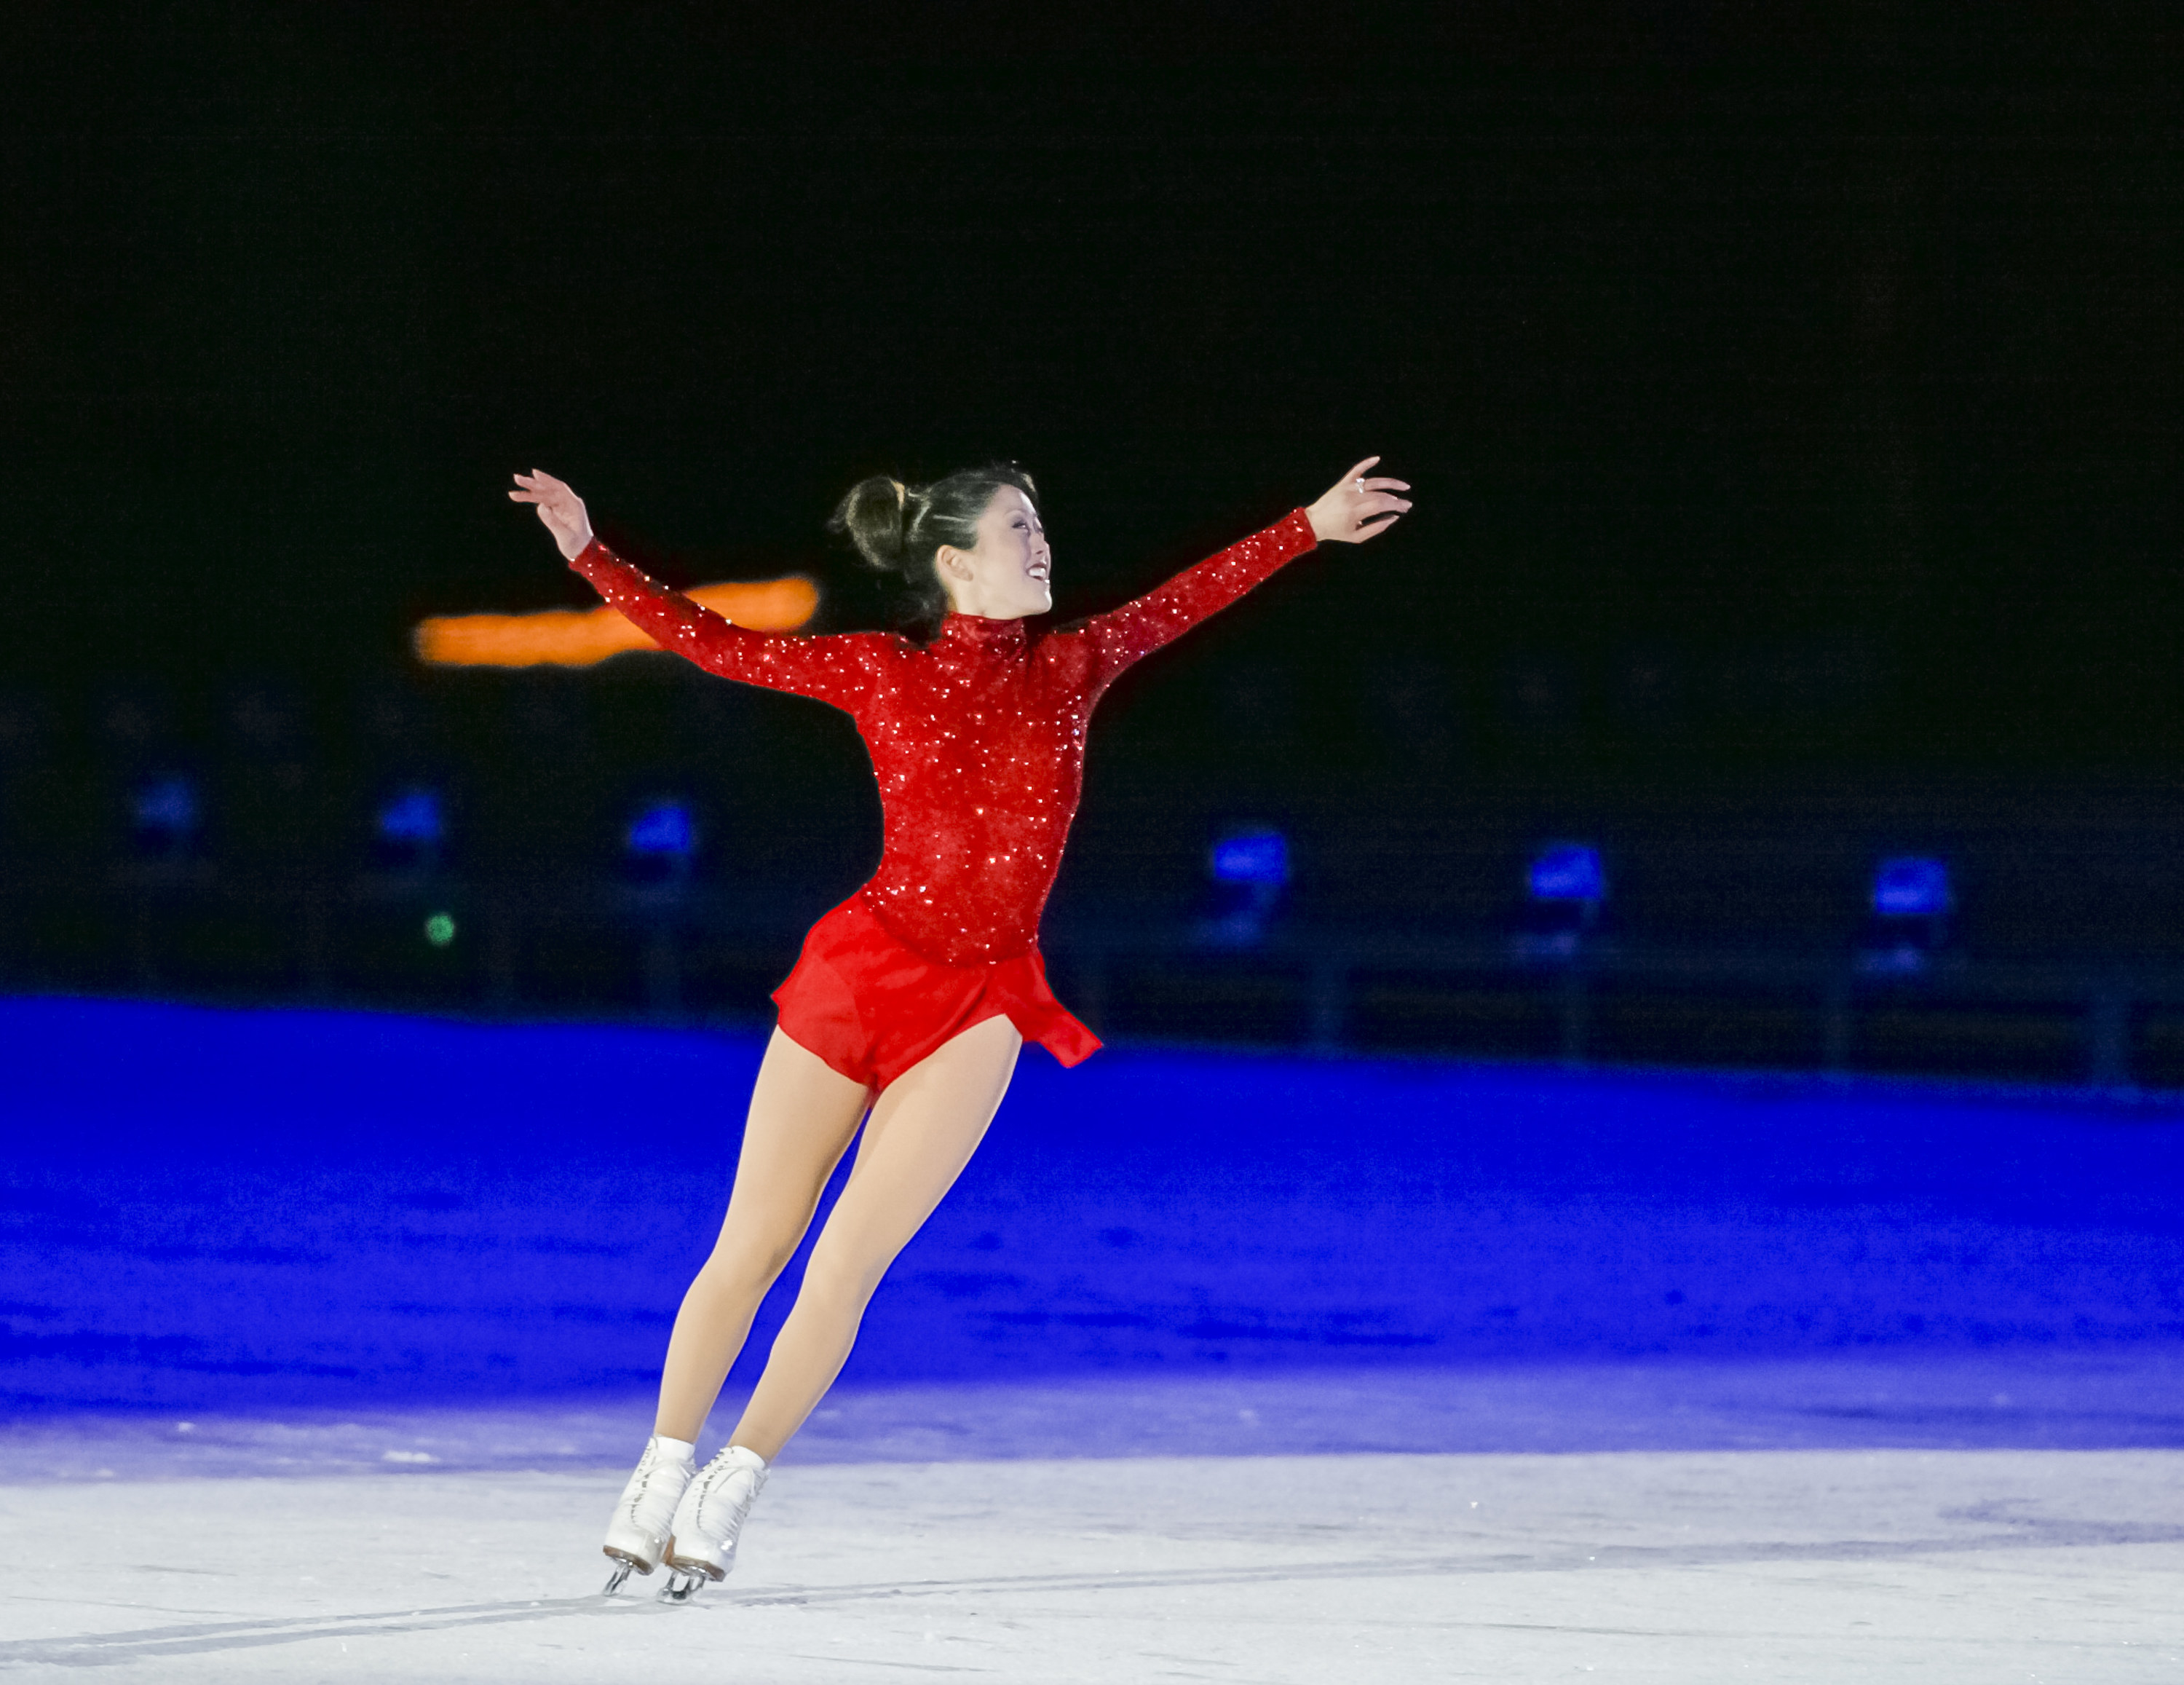 Kristi Yamaguchi ice skating